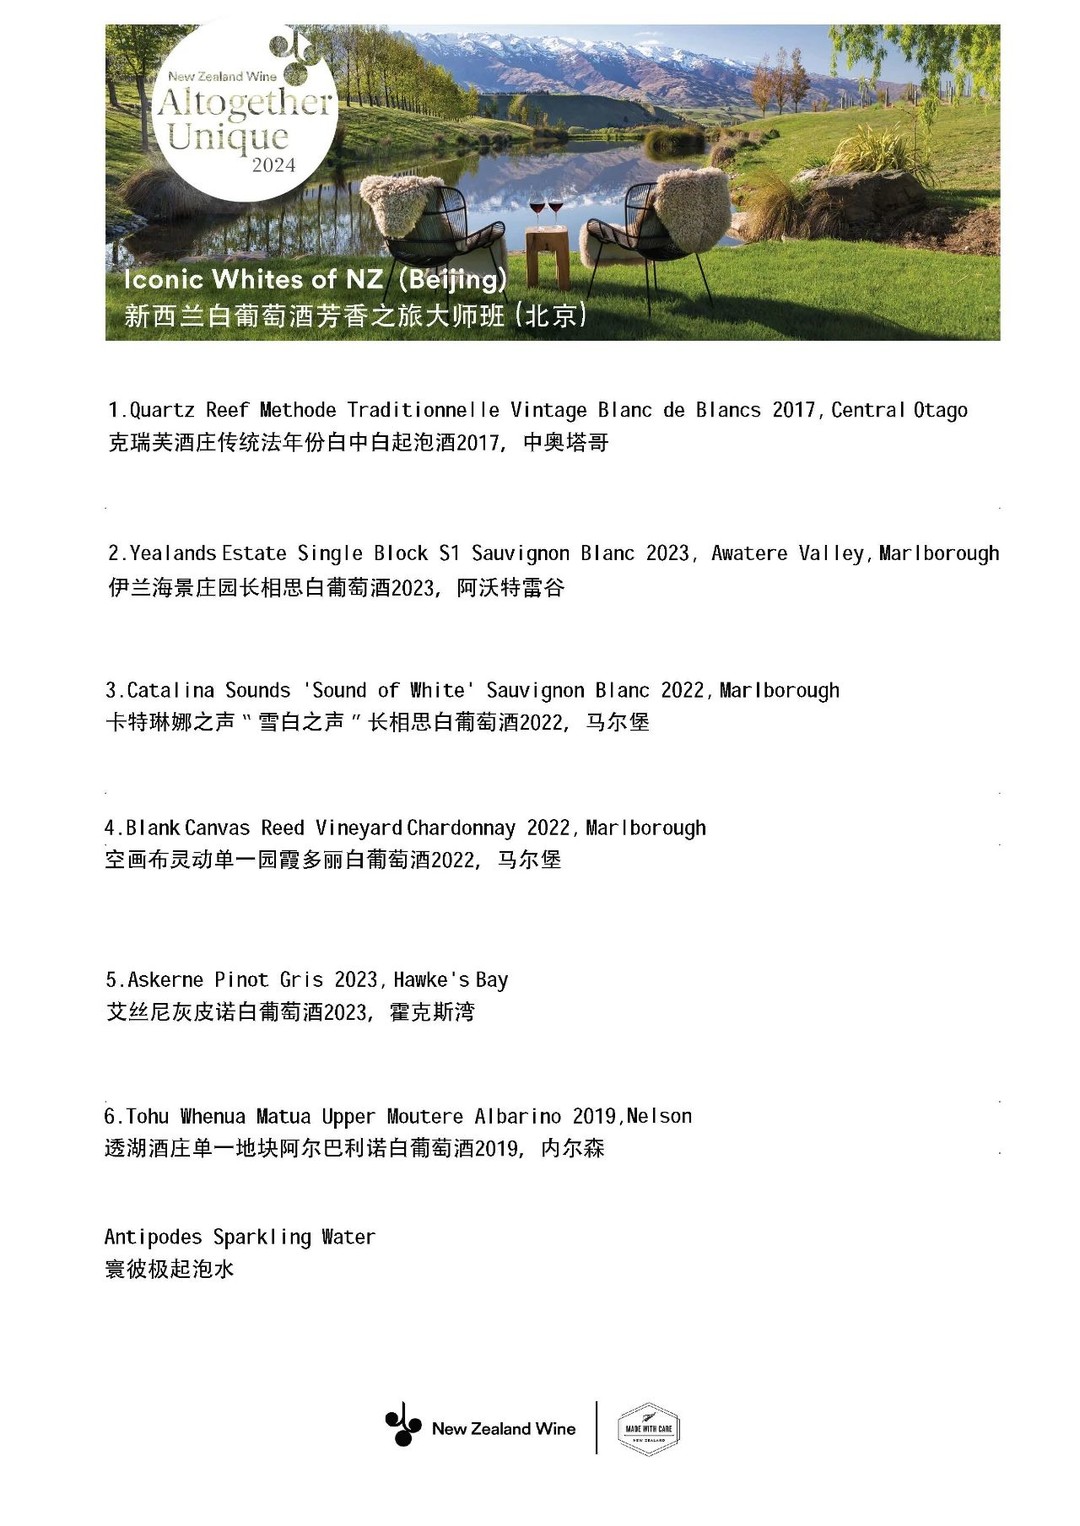 北京、上海酒友福利：“纯净独特，精粹汇集”新西兰葡萄酒路演即将开启，邀你共赴纯净之约